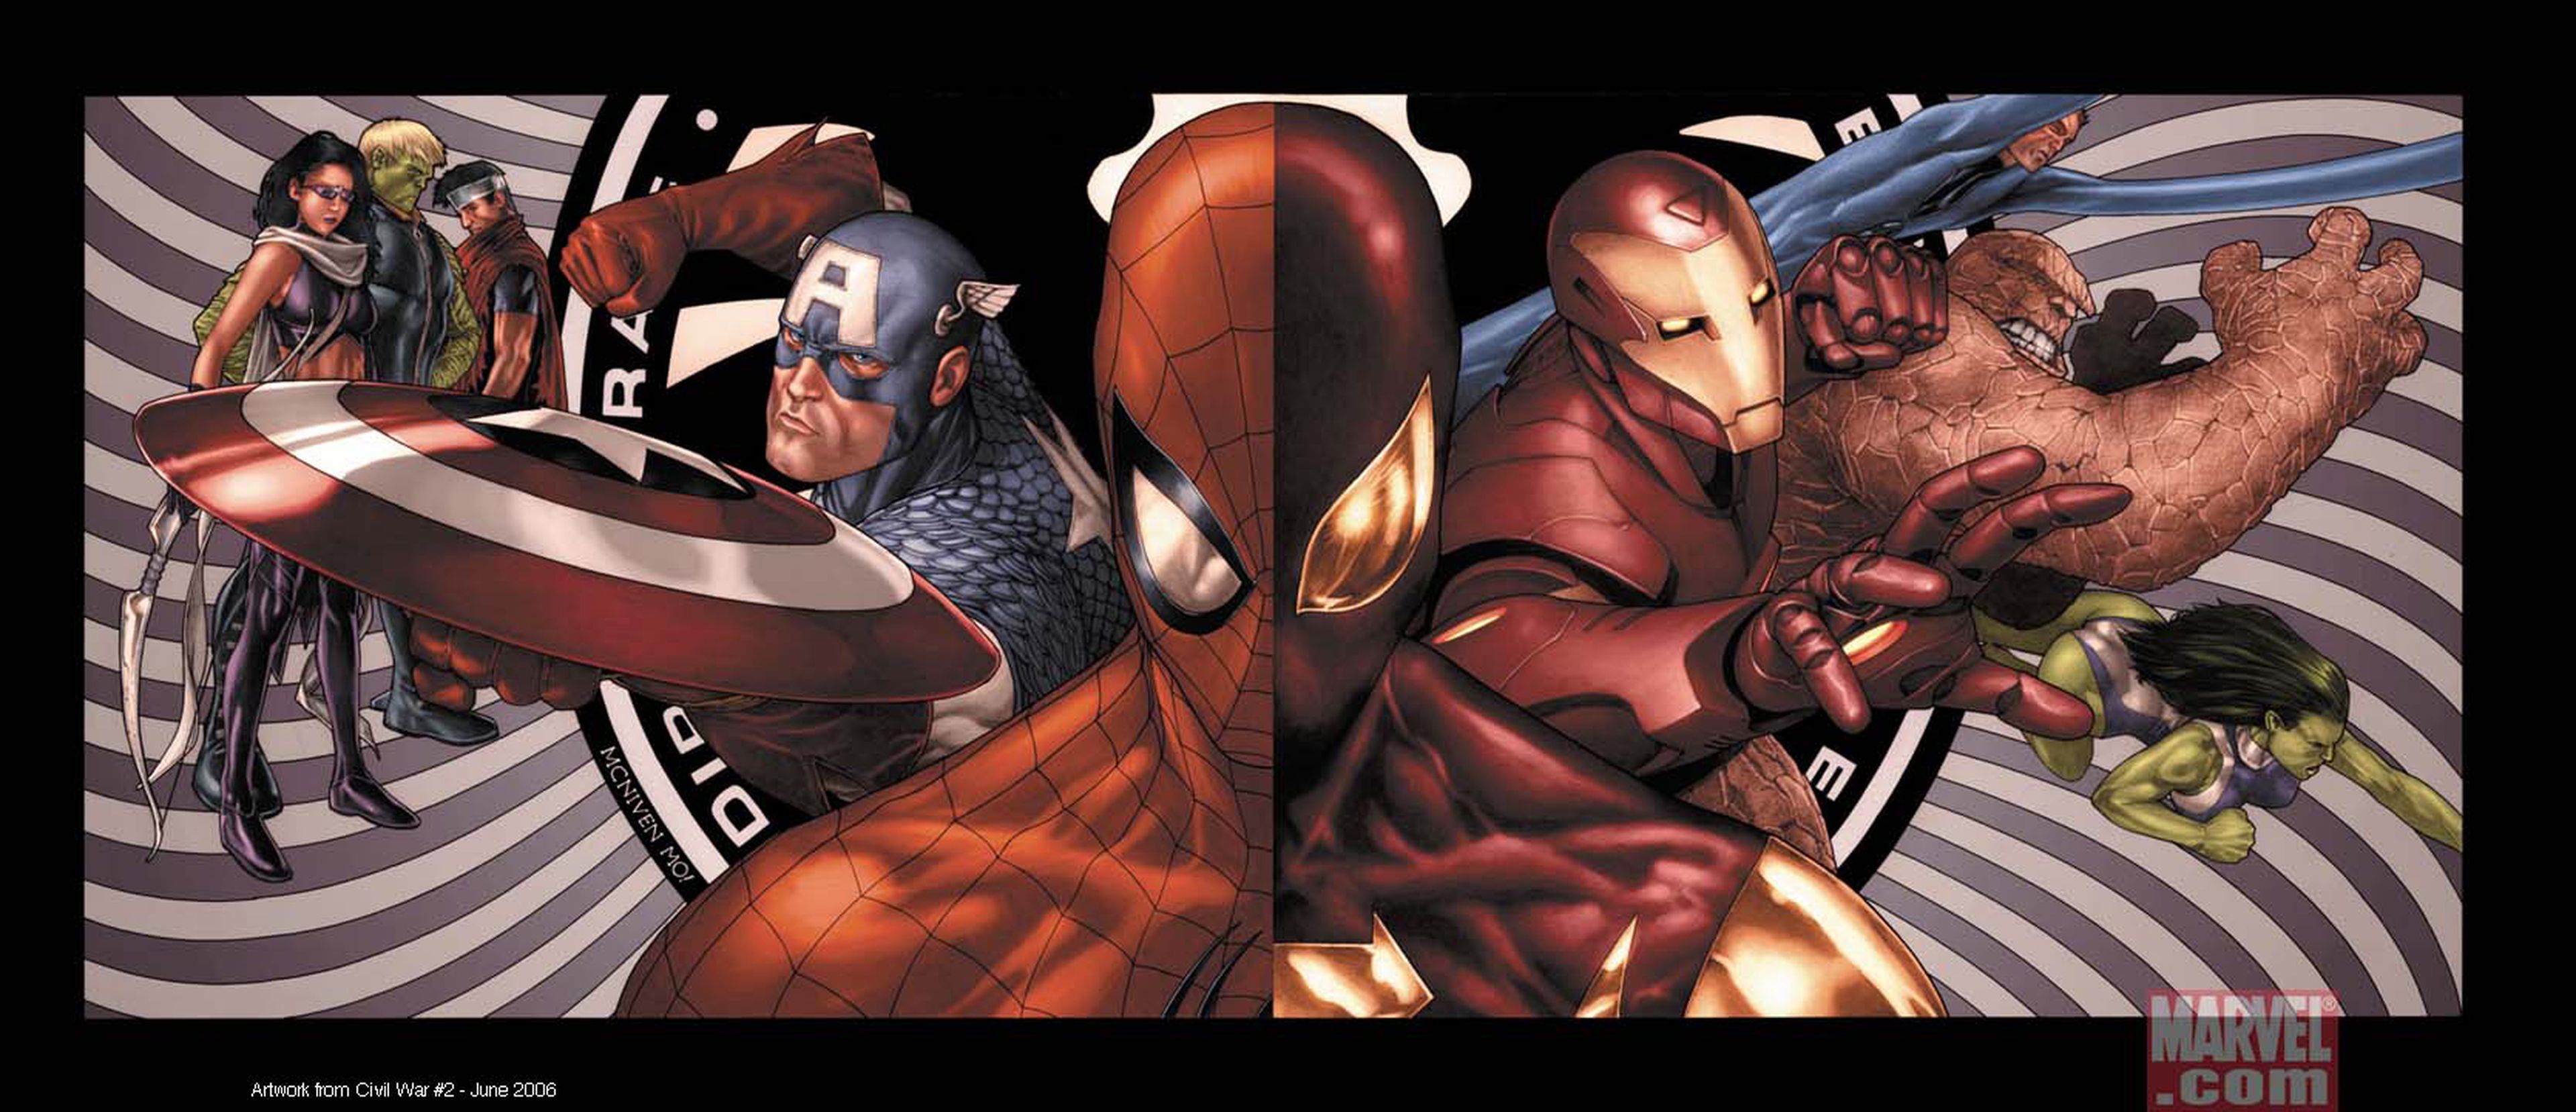 Spider-Man debutará en Capitán América: Civil War